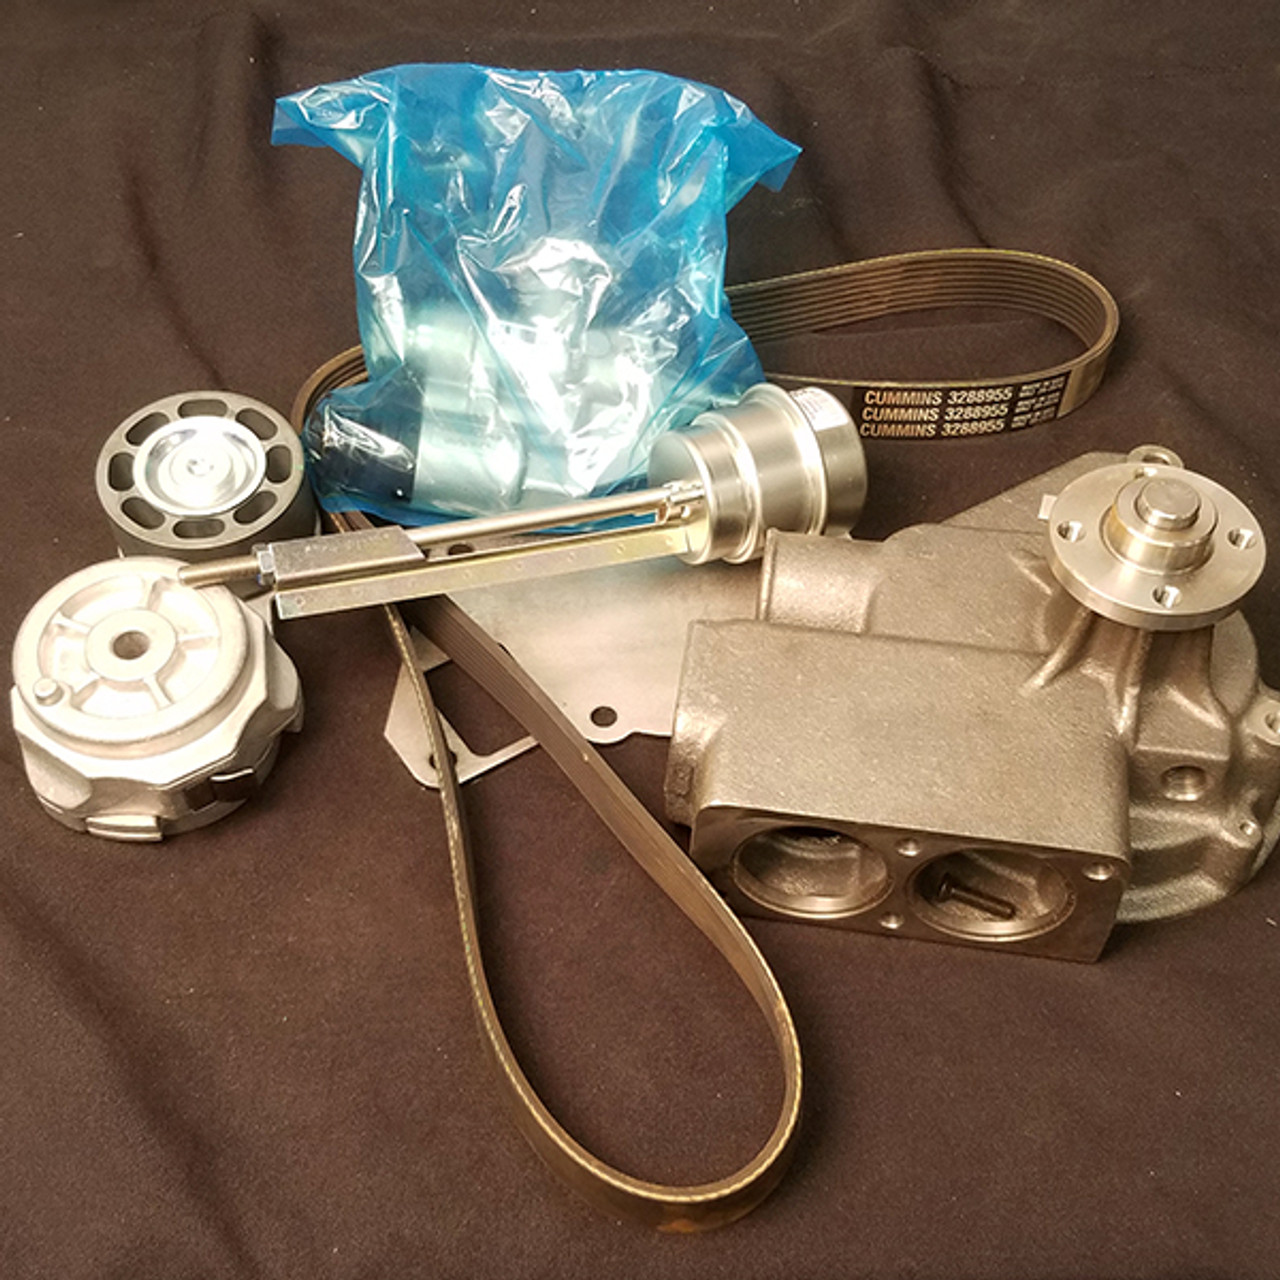 4352546: Cummins® OEM Lower Engine Gasket Kit